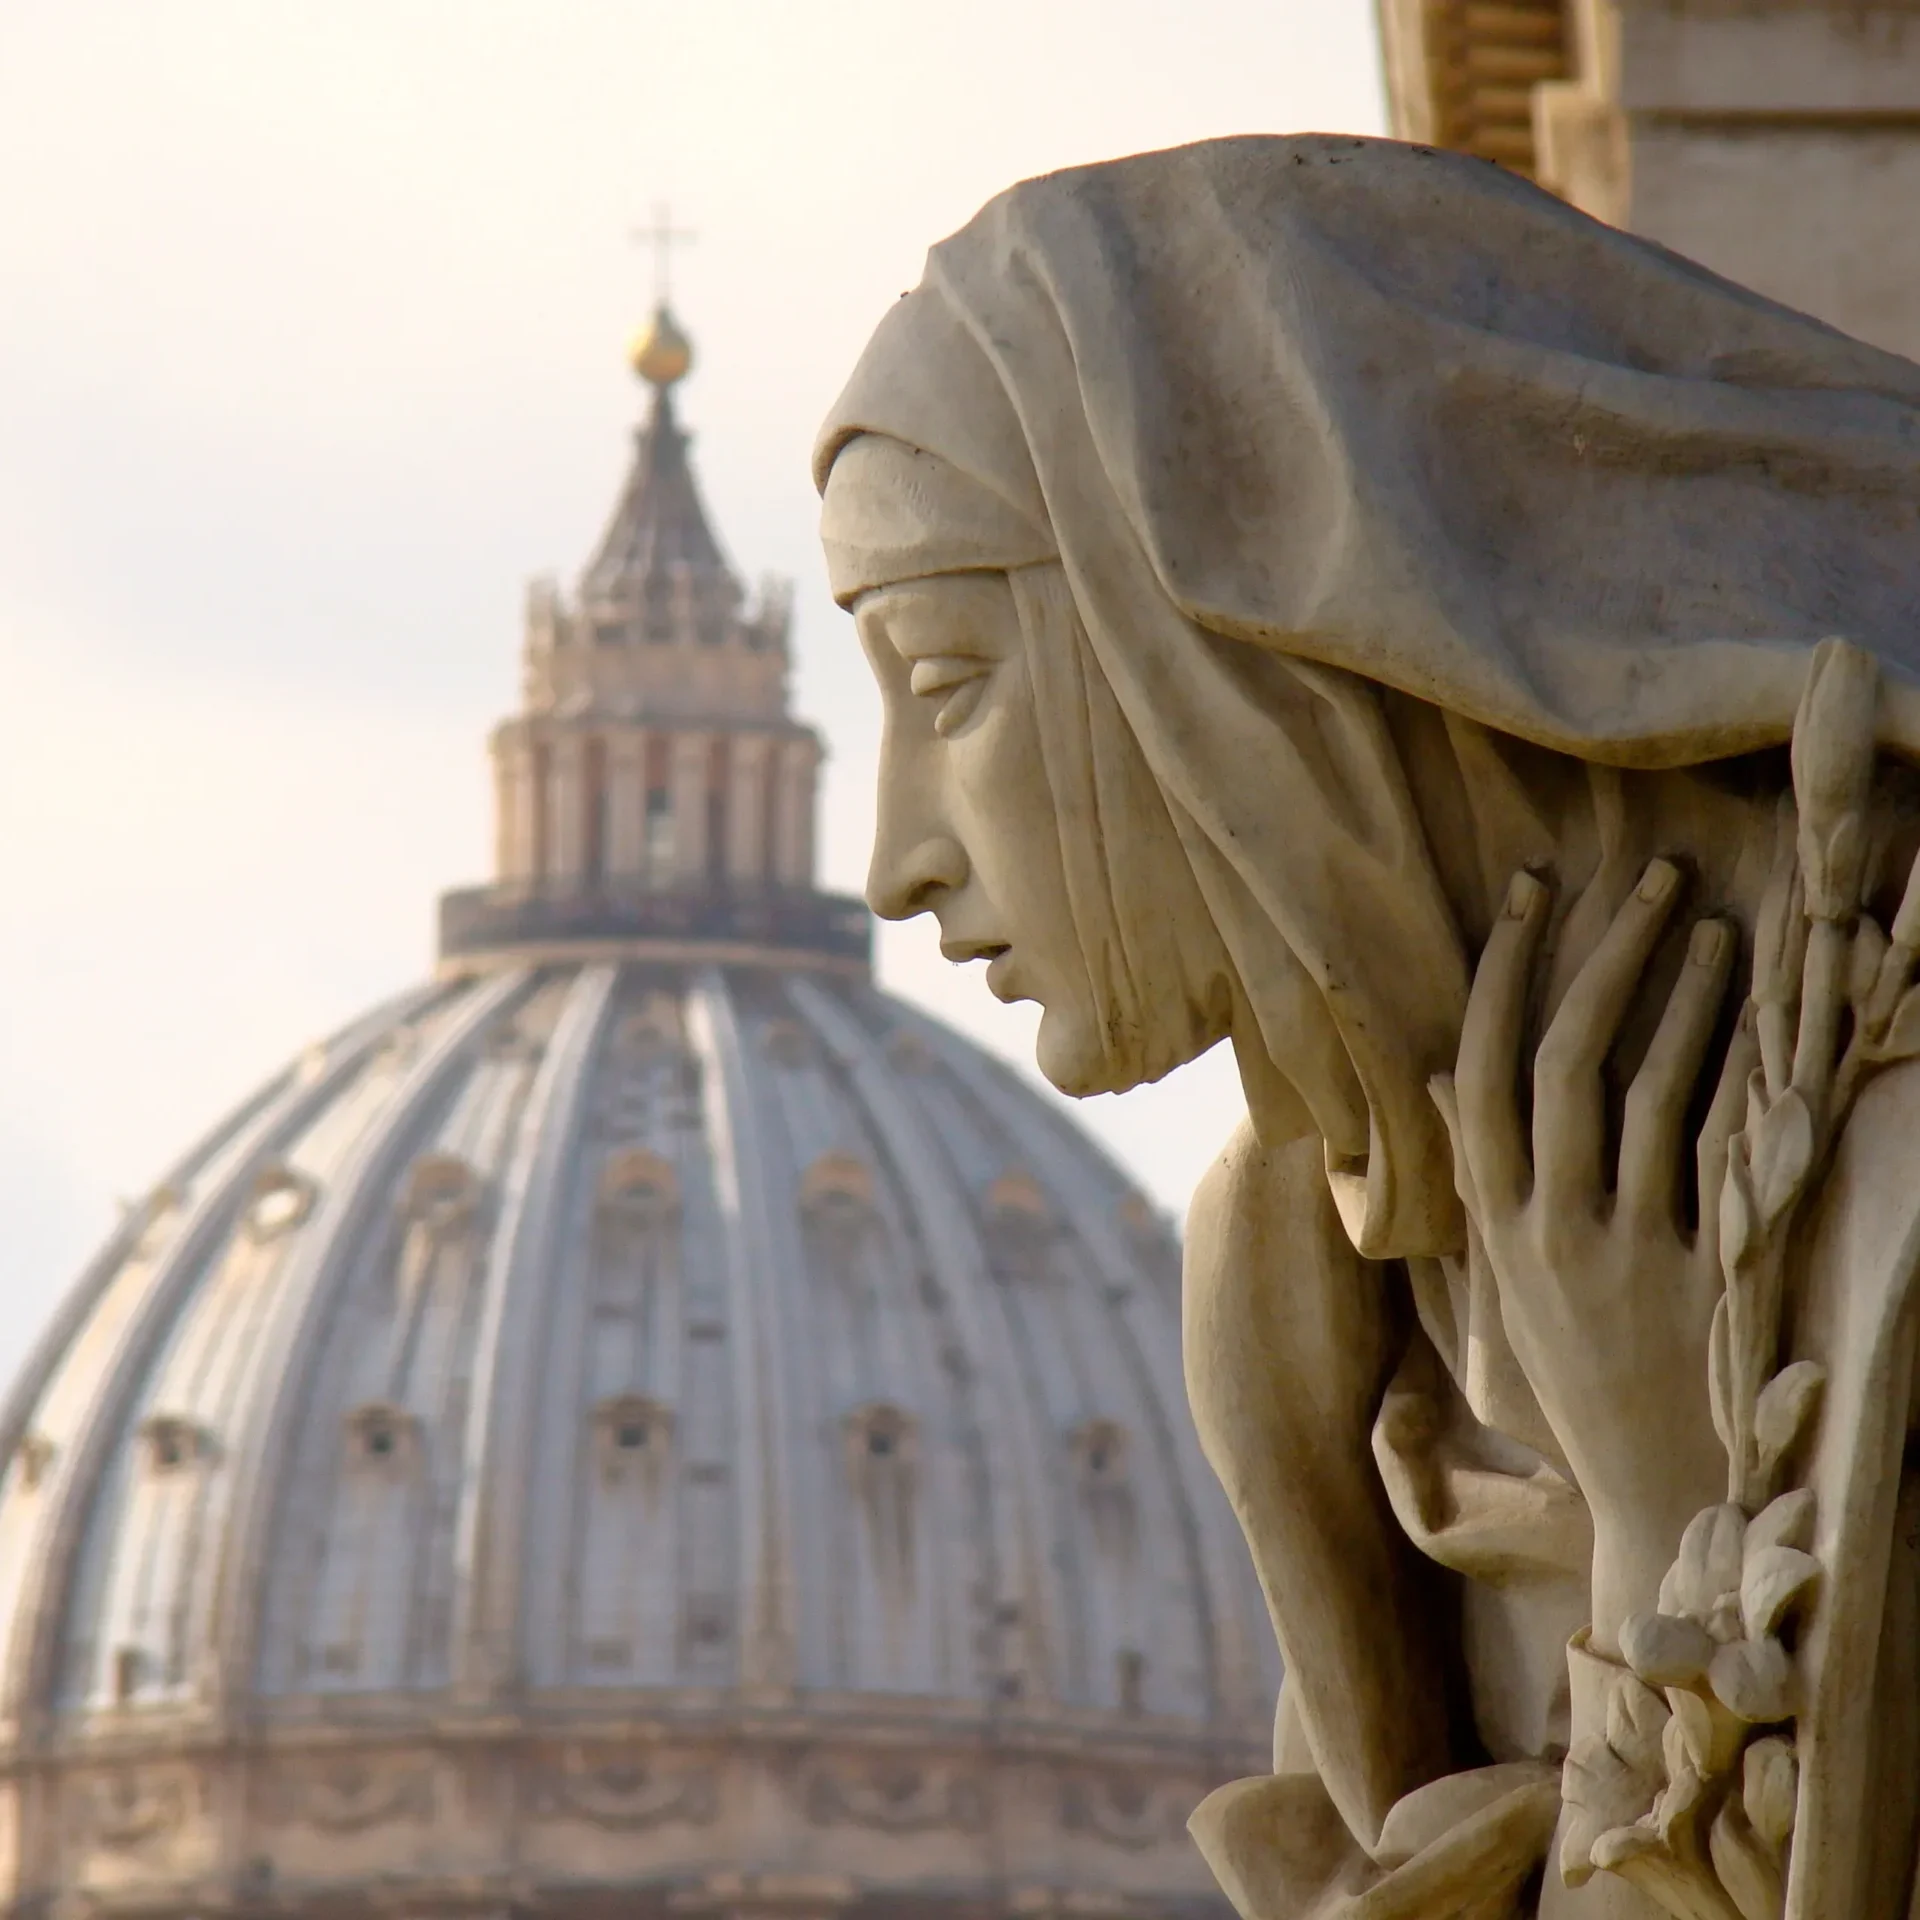 Lunes 29 de abril, Santa Catalina de Siena: La Escultura que Rinde Homenaje a una Vida de Fe y Valentía